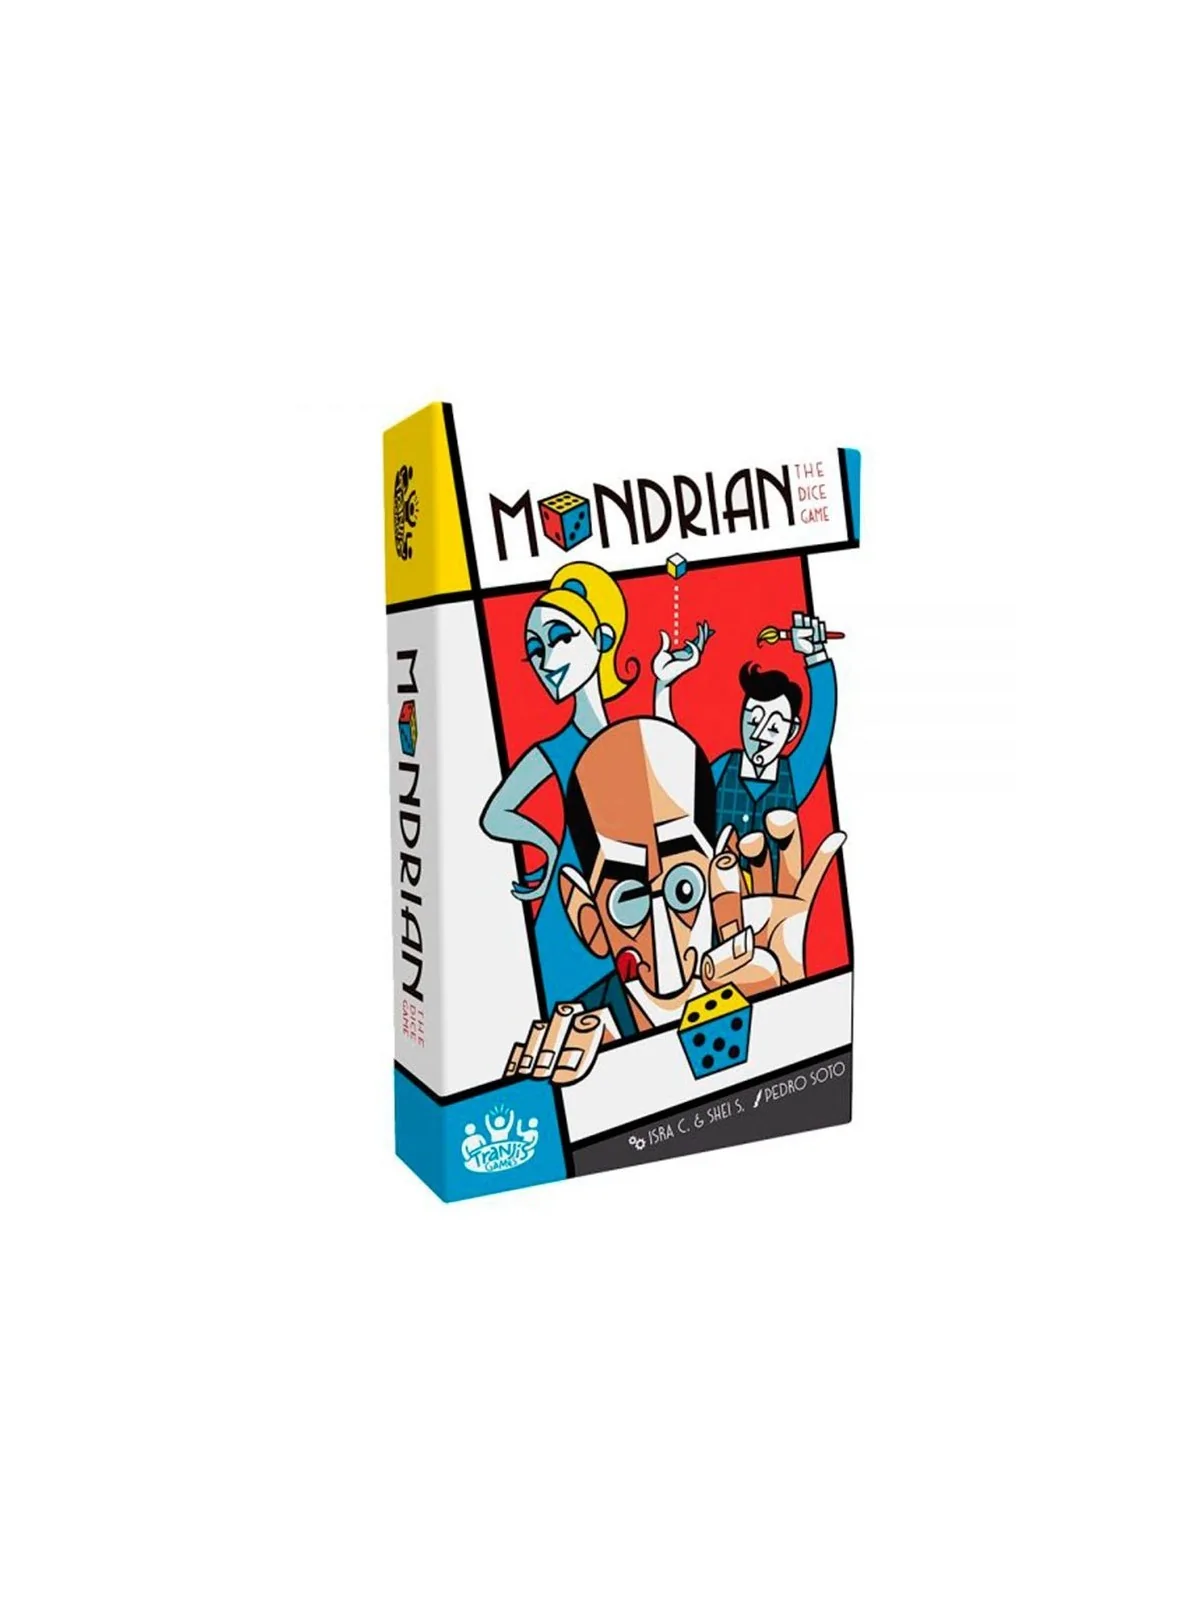 Comprar Mondrian barato al mejor precio 22,46 € de Tranjis Games